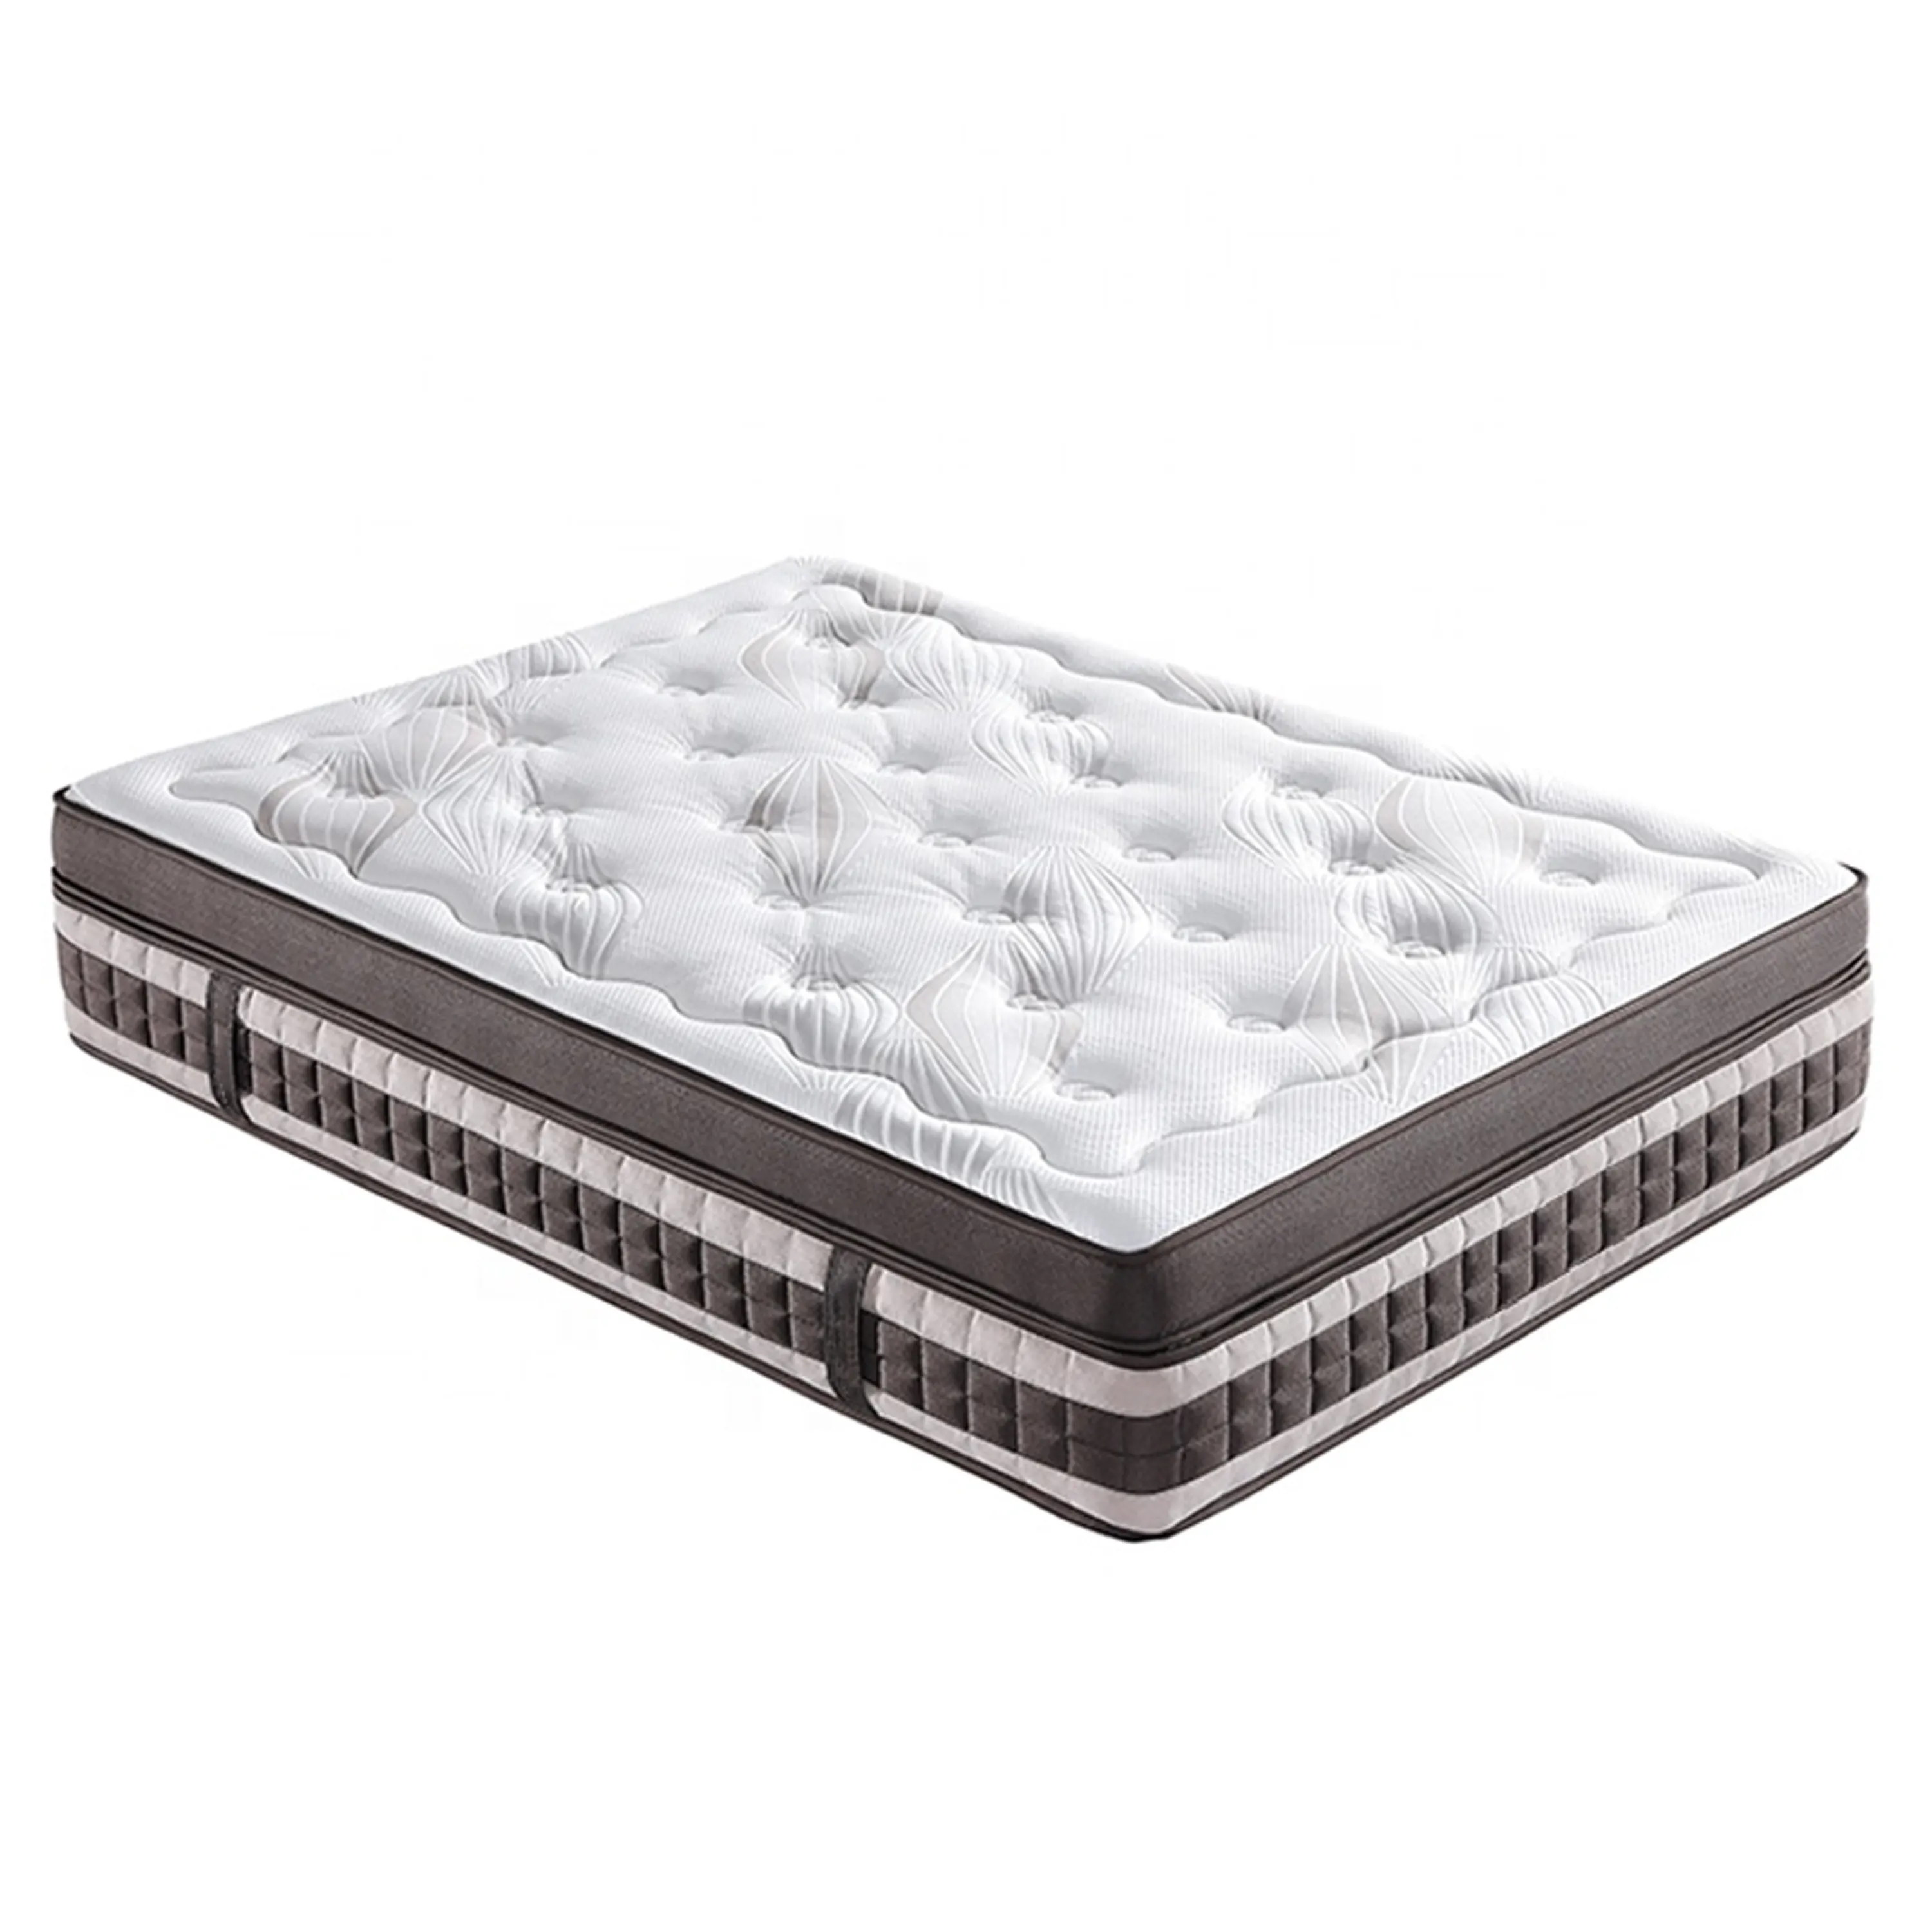 good sleep comfortable luxury sleeping Mattress size